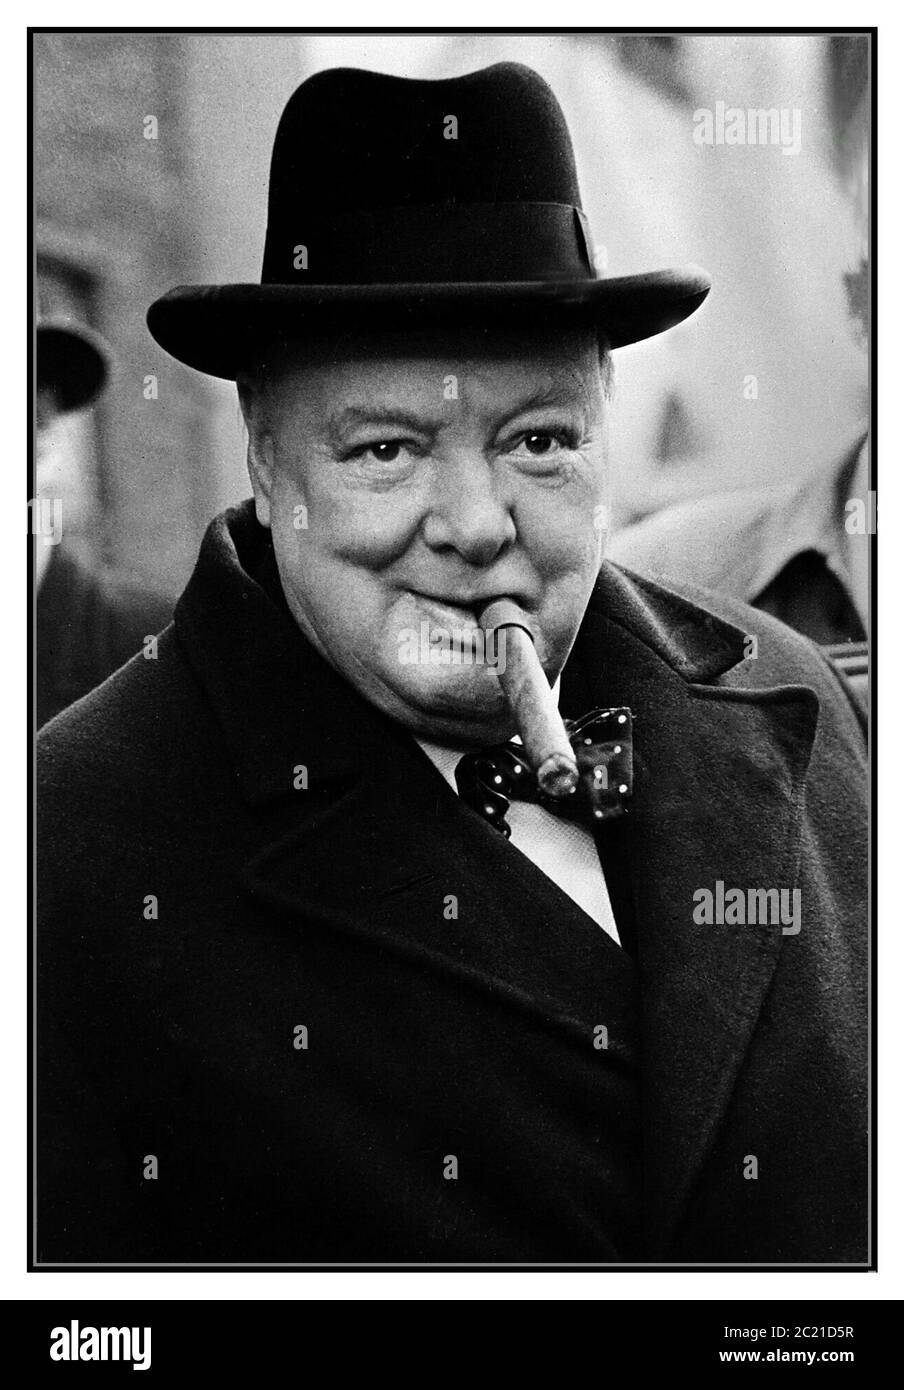 WINSTON CHURCHILL MIT ZIGARRENSCHLEIFE UND HOMBURGER HUT Großbritanniens größter und verehrter Kriegsführer, dessen großartige Reden eine Nation dazu anspornt, sich im Zweiten Weltkrieg erfolgreich der Nazi-deutschen Aggression zu widersetzen Dieses Nachkriegsbild 1949/1950 findet ihn, seine Lieblings-kubanische Zigarre zu rauchen. Churchill wurde für seine Verdienste um Großbritannien zum Ritter geschlagen, als Sir Winston Leonard Spencer Churchill. Ein großer englischer Staatsmann Schriftsteller und Künstler Maler (1874-1965). Stockfoto